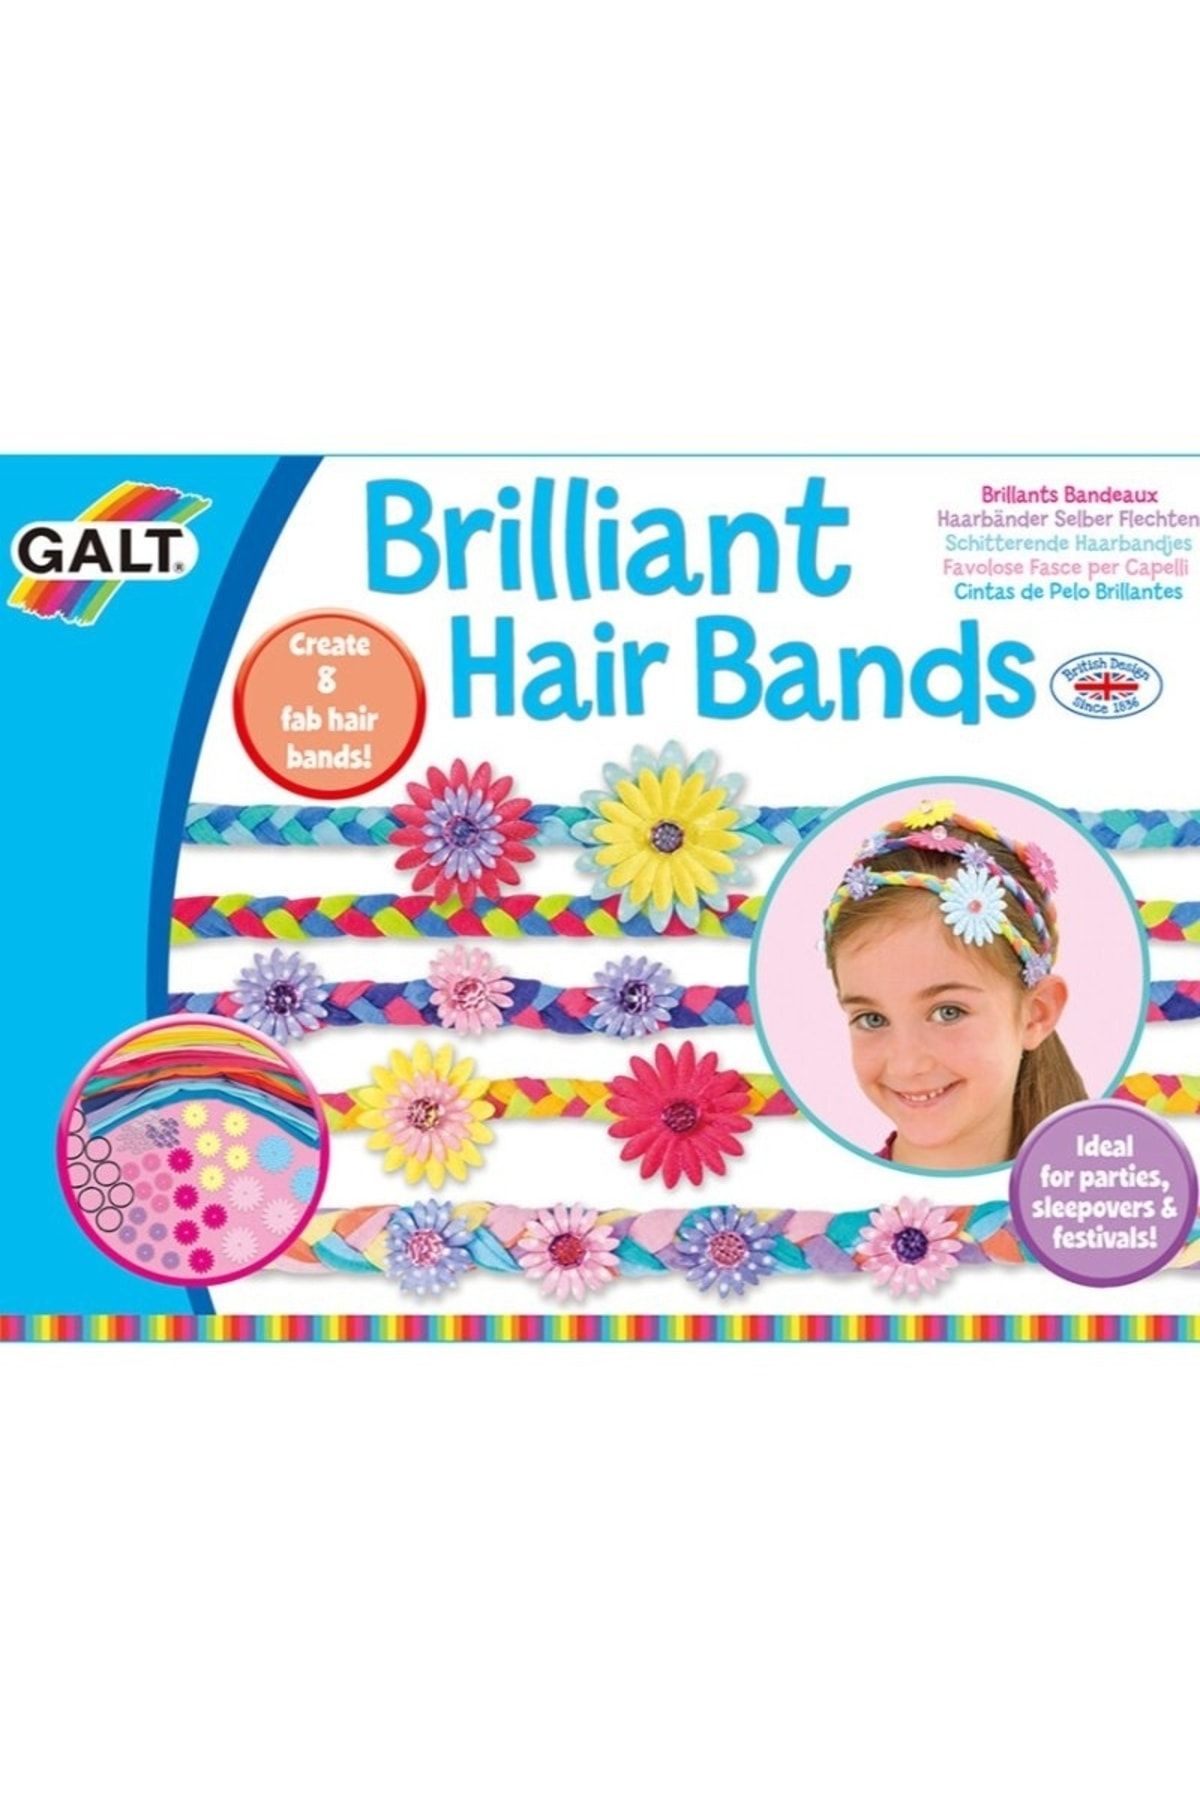 Galt Brilliant Hairbands - Saç Bandı Tasarla